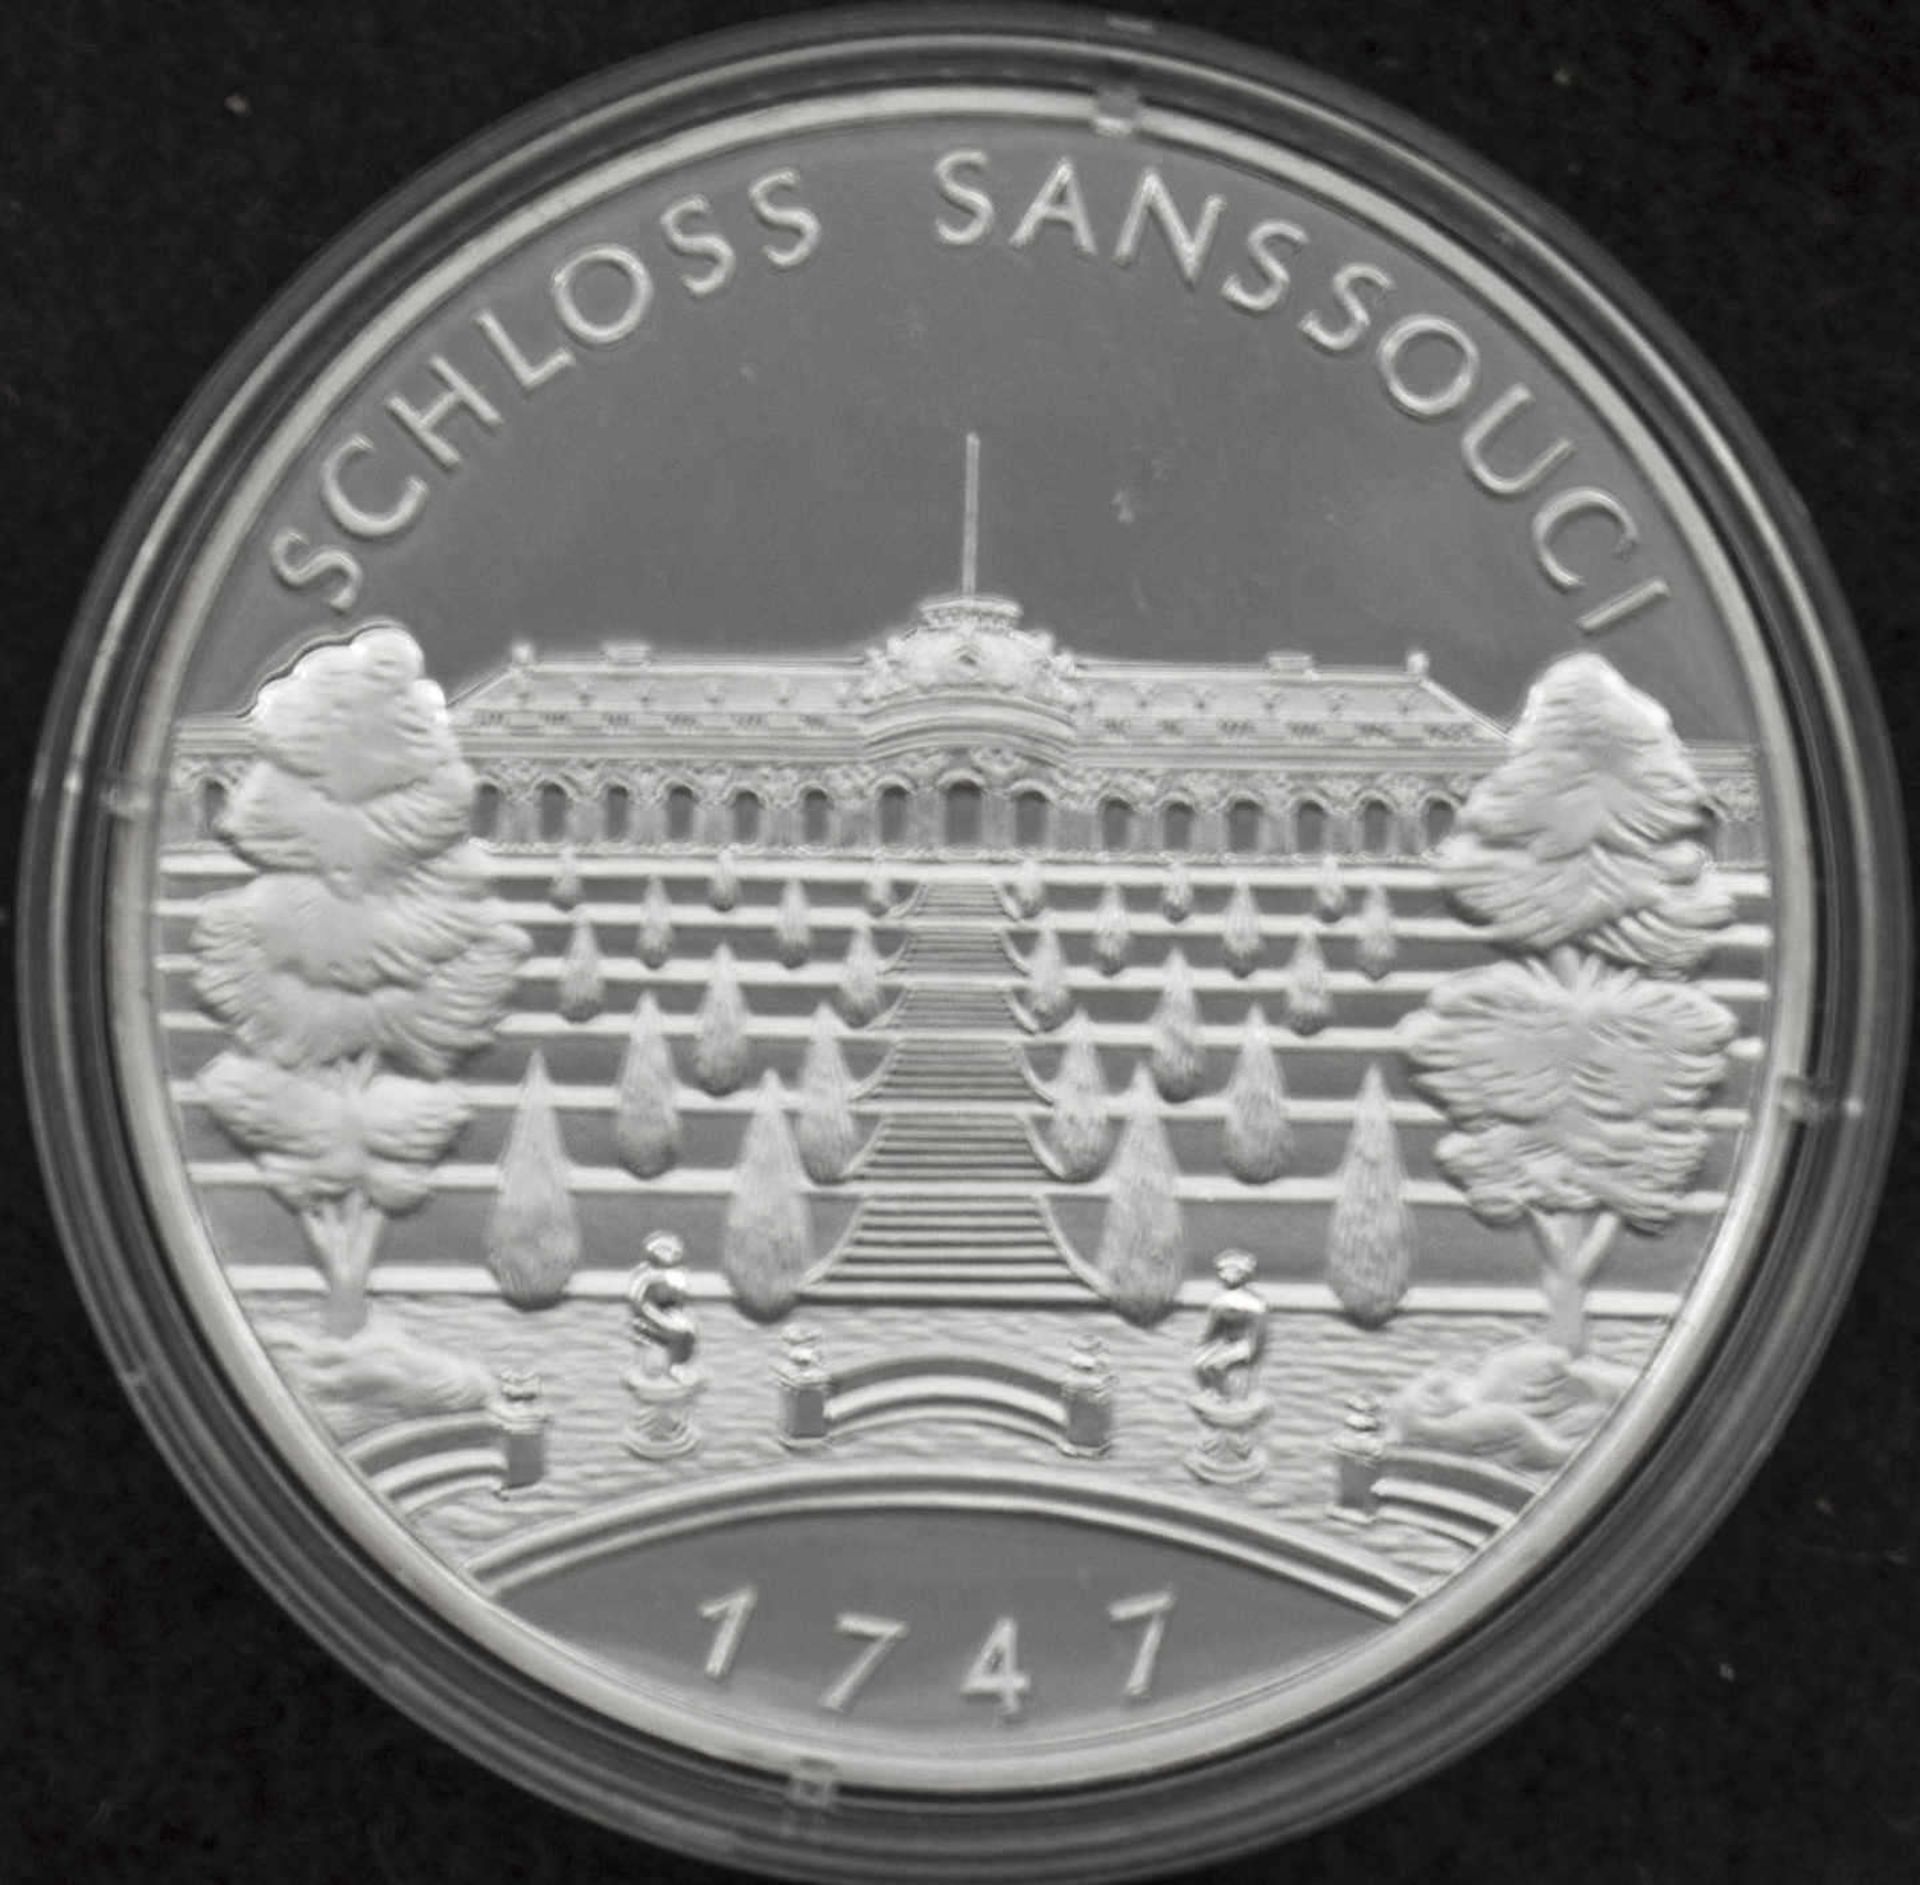 Russland, Medaille Schloss Sanssouci. Silber 999 gepunzt. Gewicht: ca. 20 g. Erhaltung: PP. Russia,